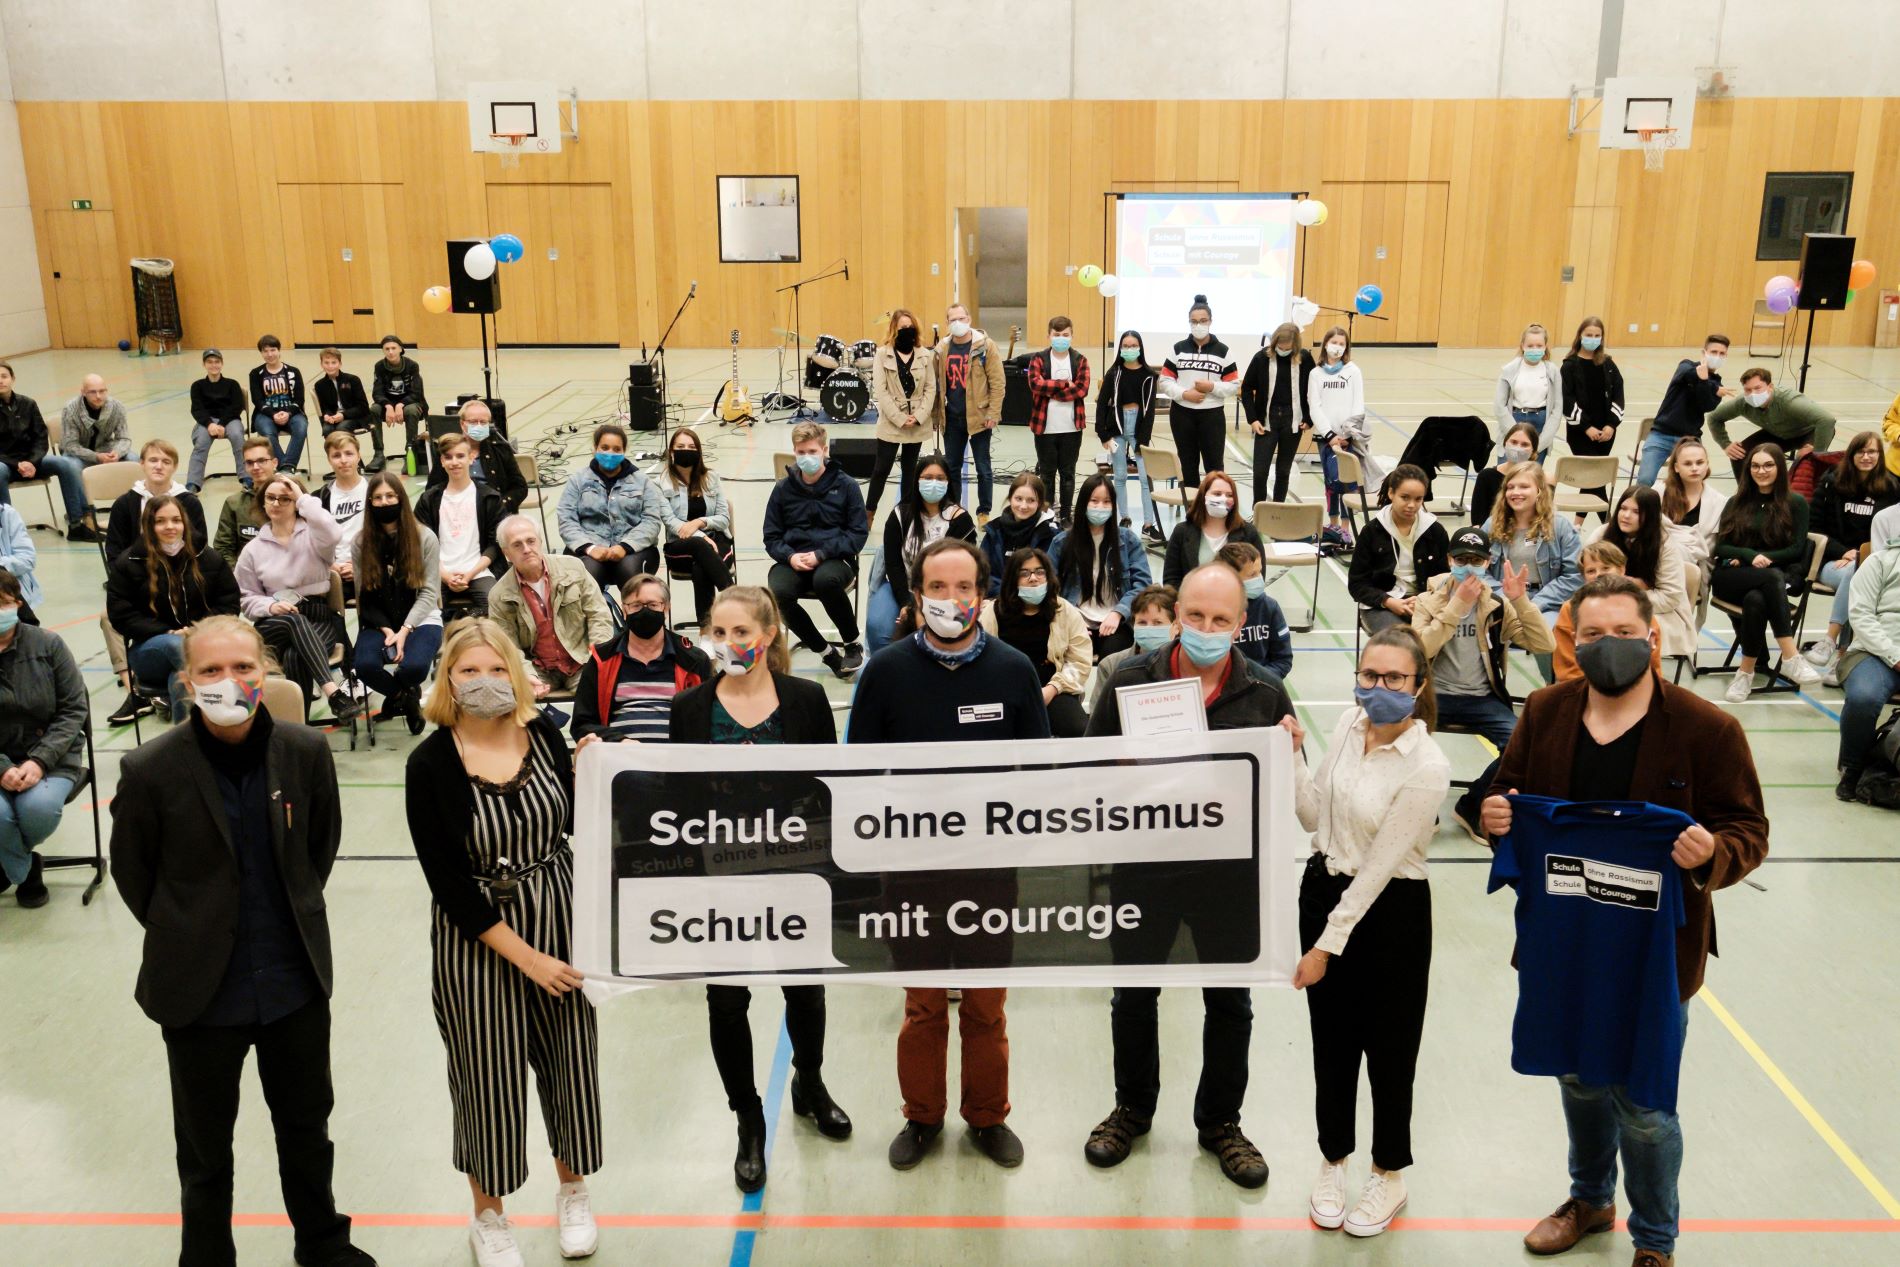 Titelverleihung an einer Berliner Schule während der Corona-Pandemie